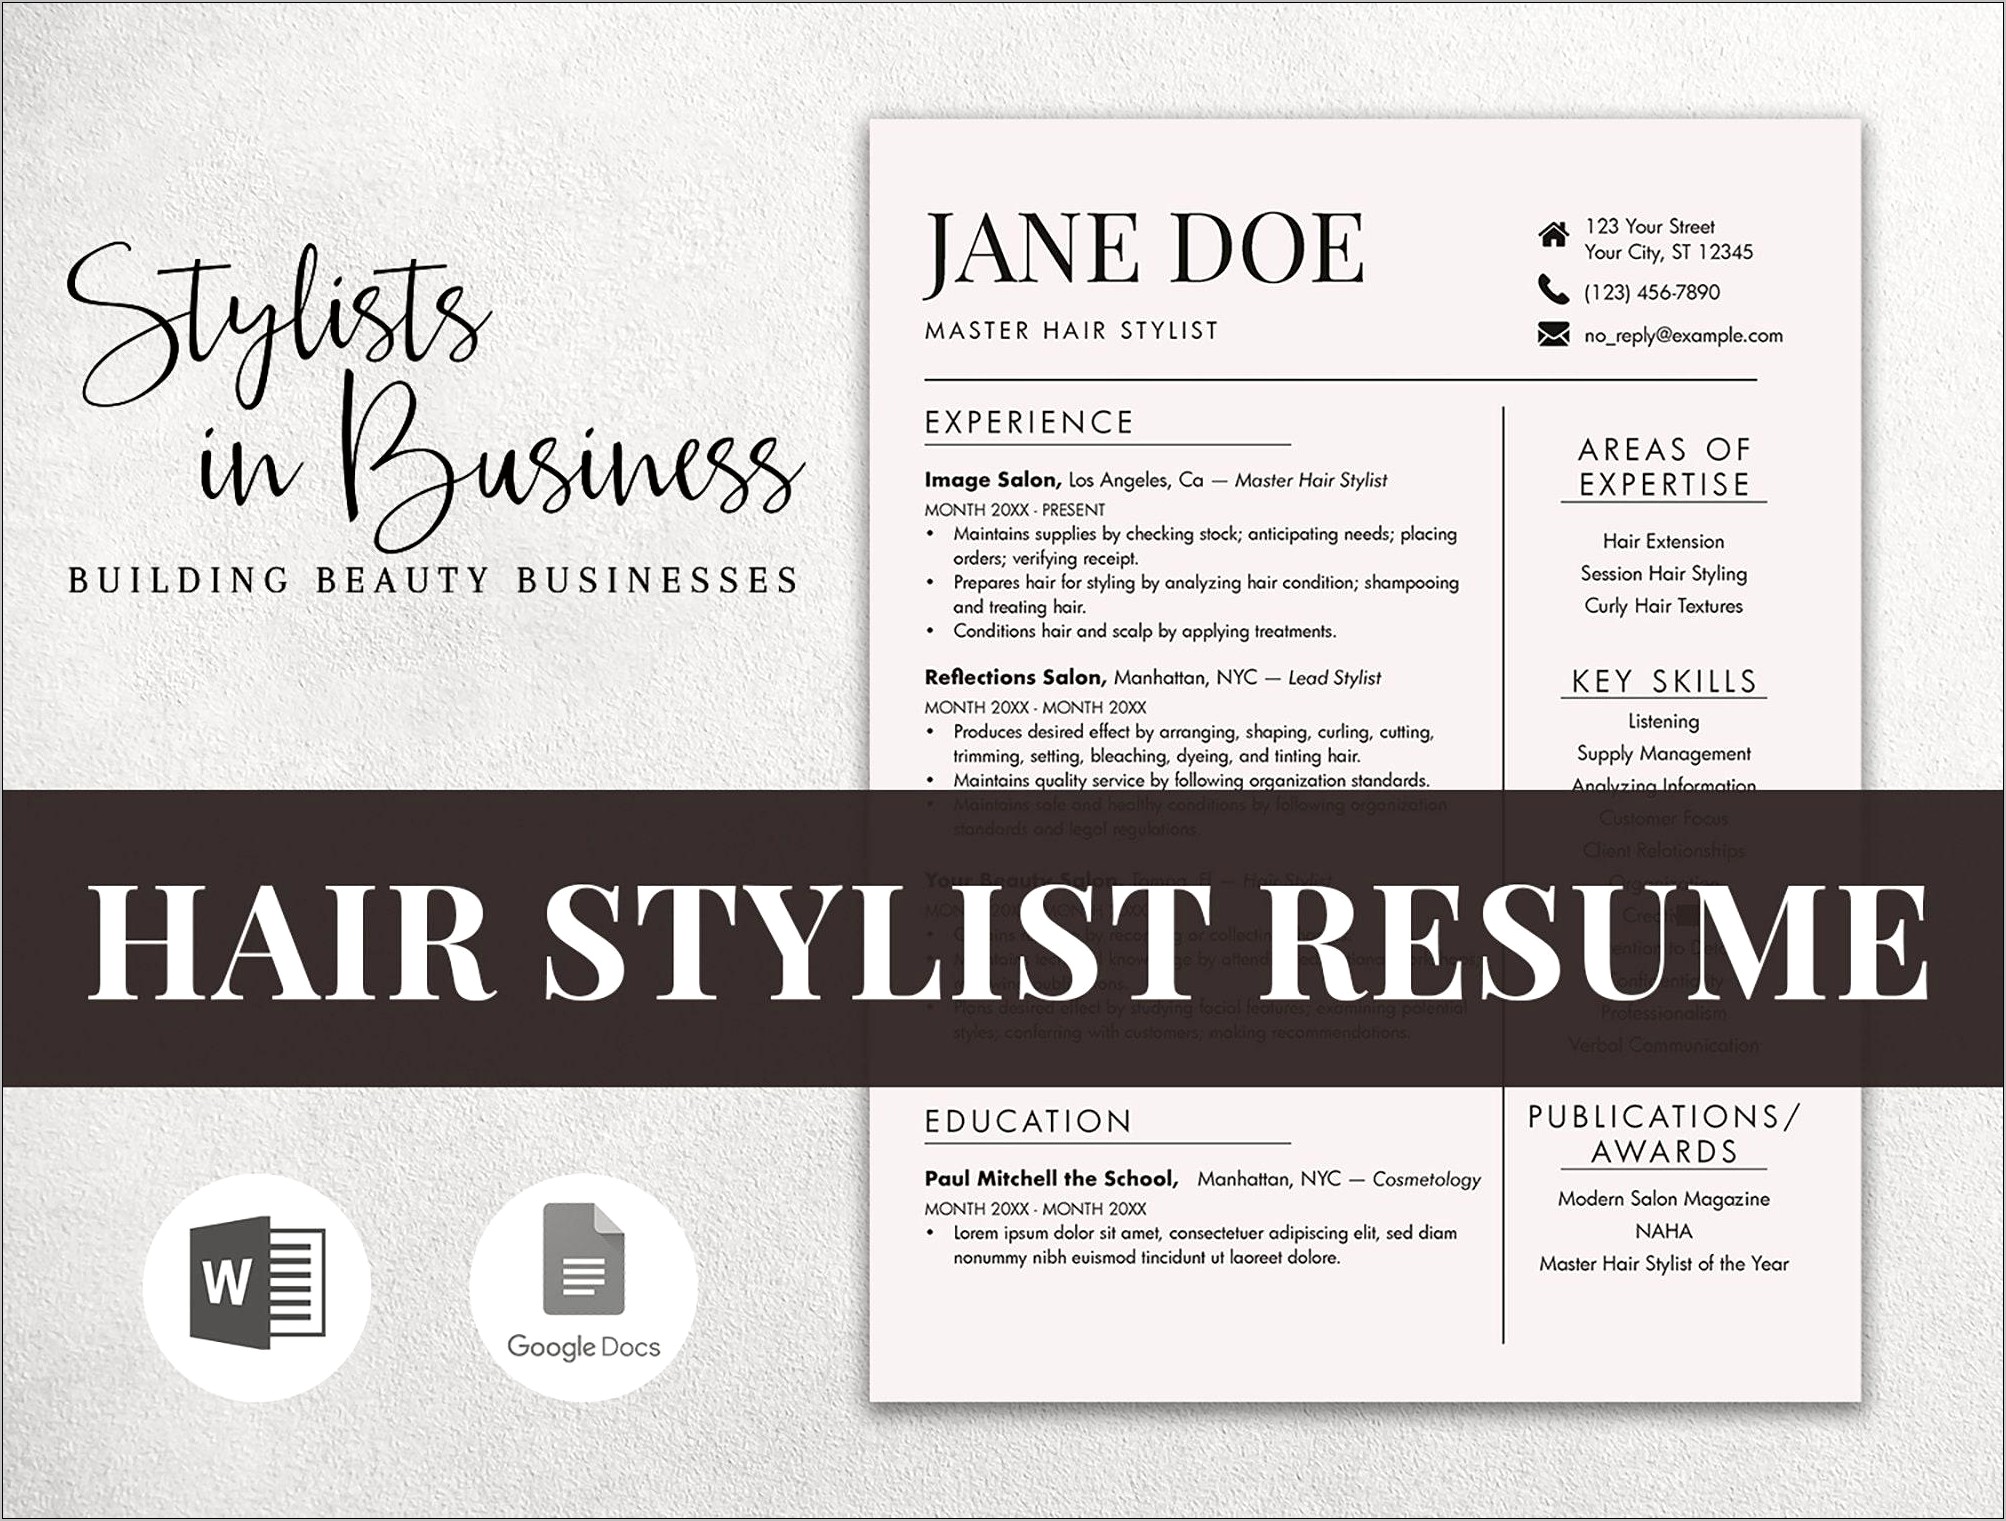 Sample Cover Letter For Hair Stylist Resume